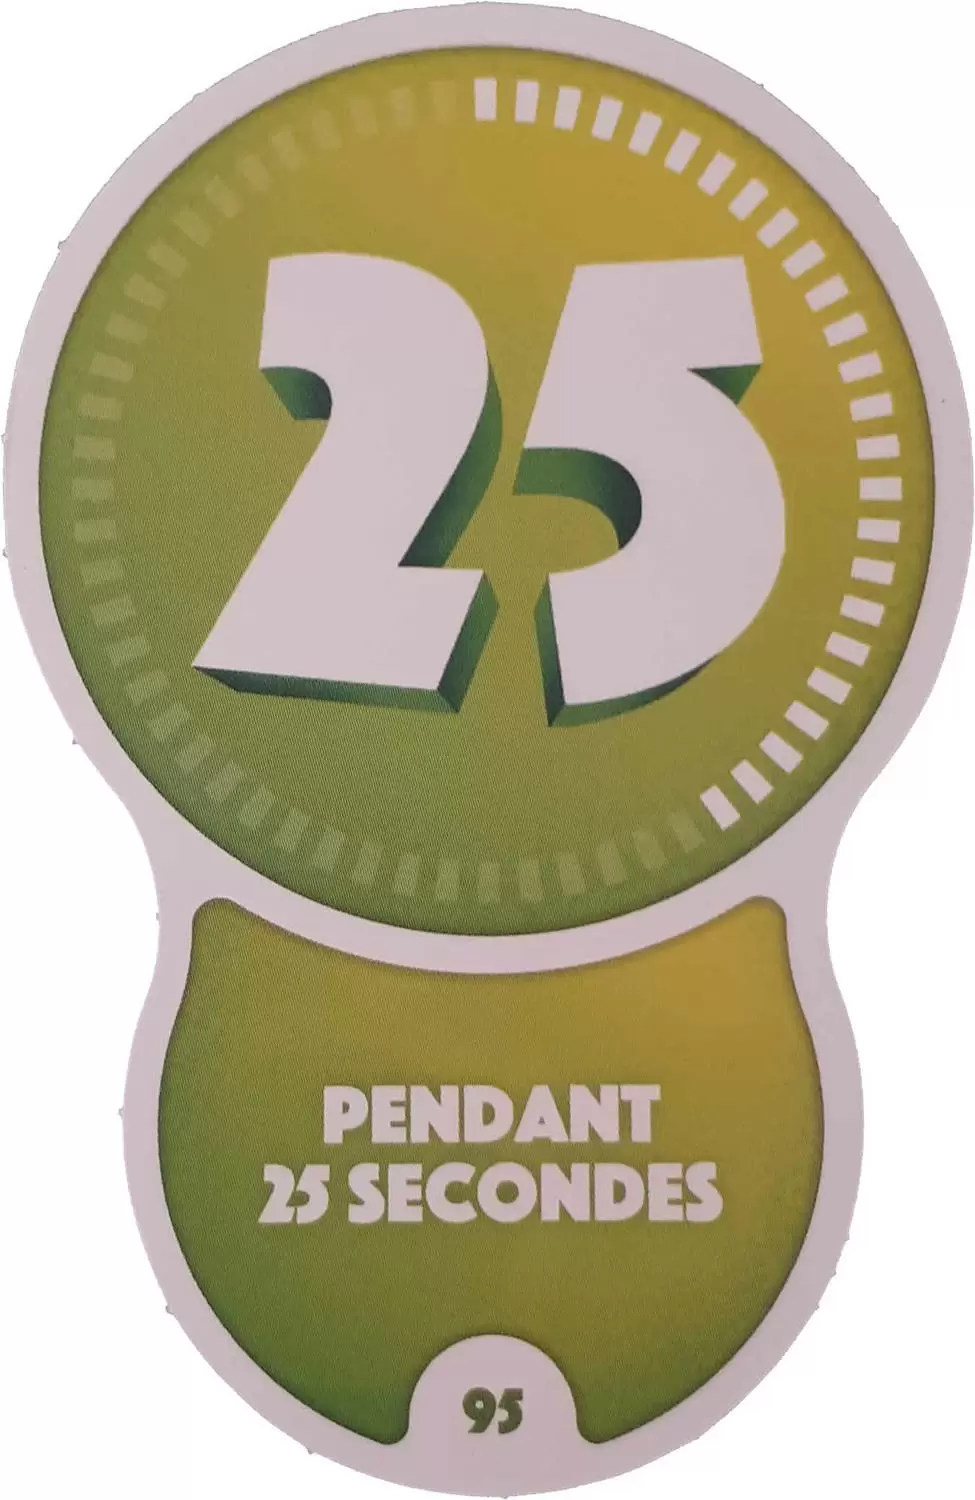 Cartes Auchan : Les Défis (Disney) - Pendant 25 secondes